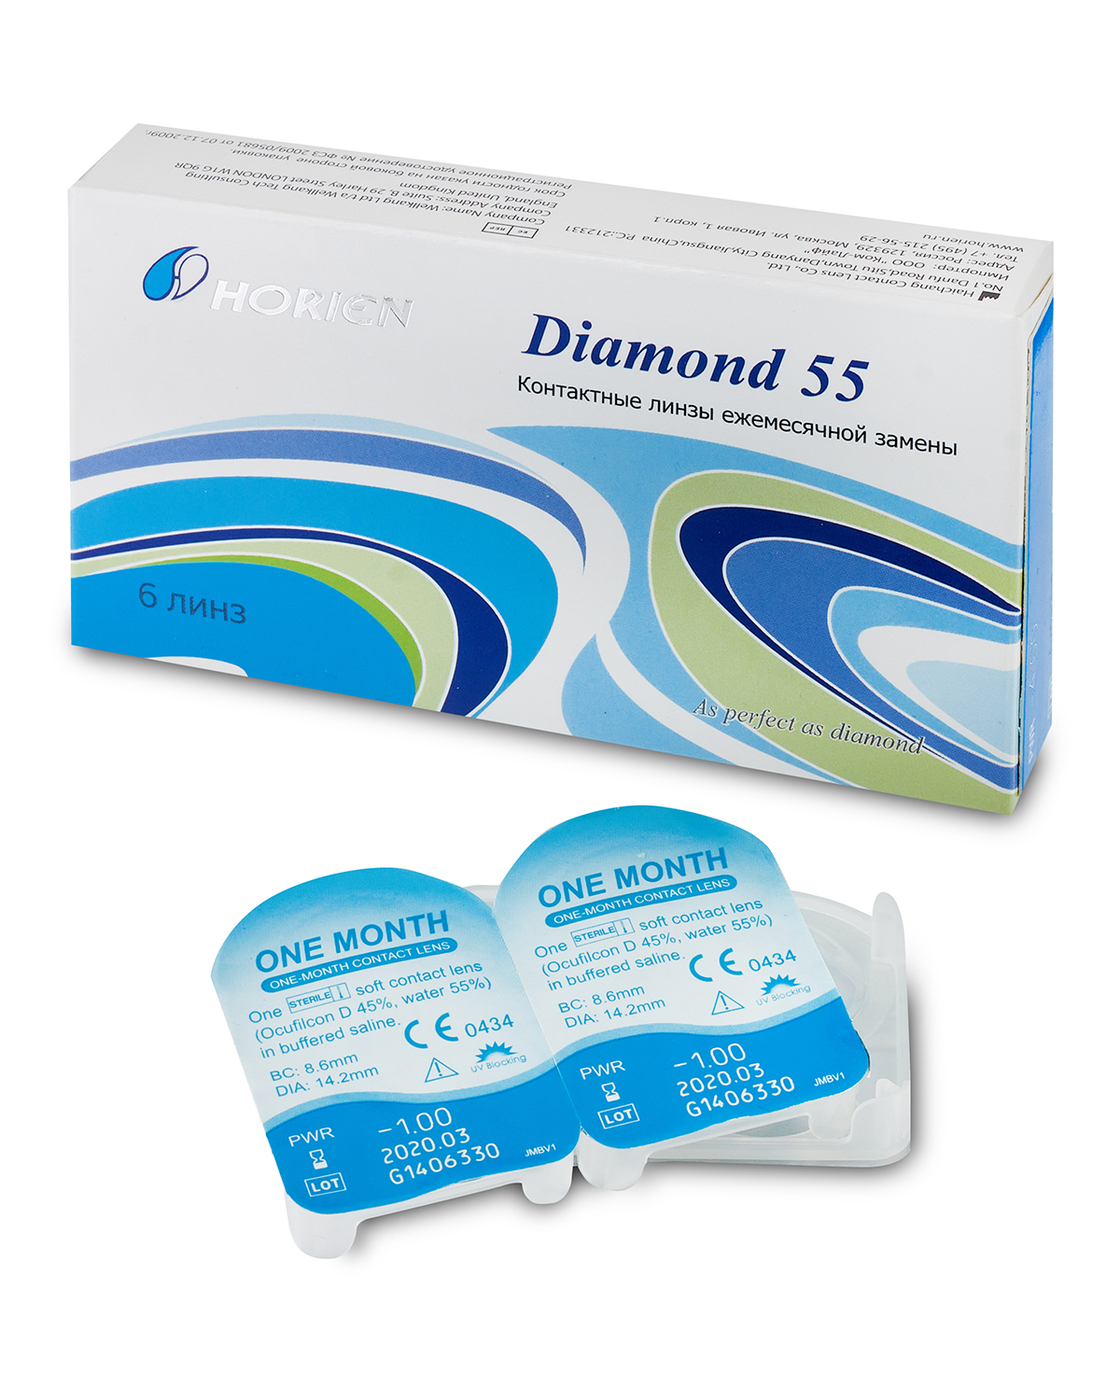 Купить Контактные линзы Diamond 55 6 линз R 8, 6 -1, 00, Horien